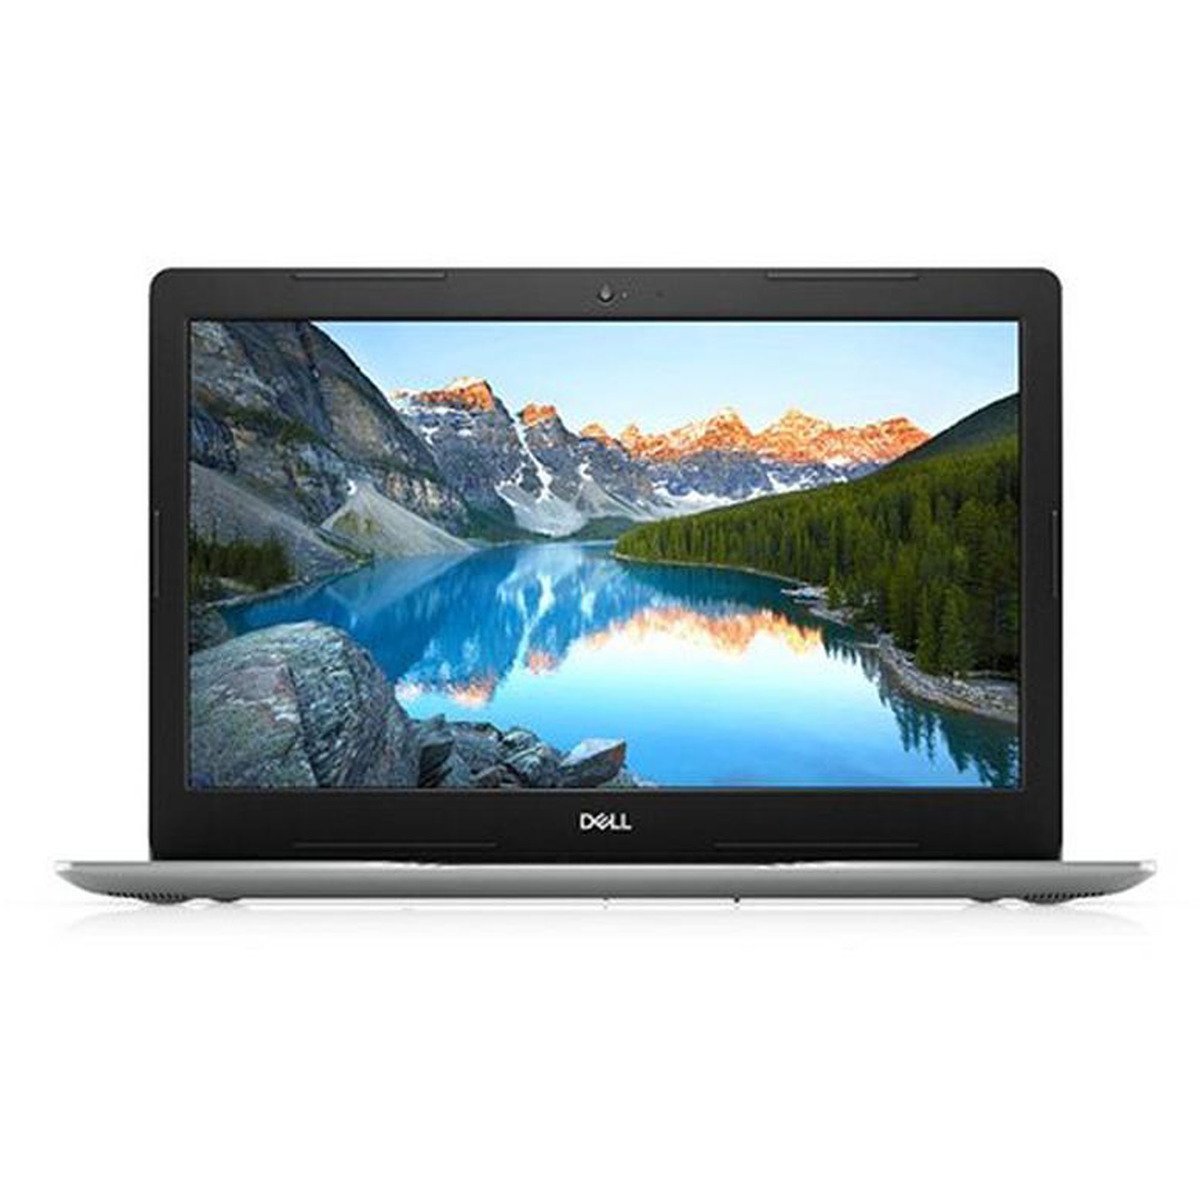 Dell 3593-INS-K0351 Laptop, Core i5, 8GB RAM, 1TB HDD,256GB SSD,Nvidia MX 230 2GB, 15.6" Full HD Screen, Windows 10, Silver